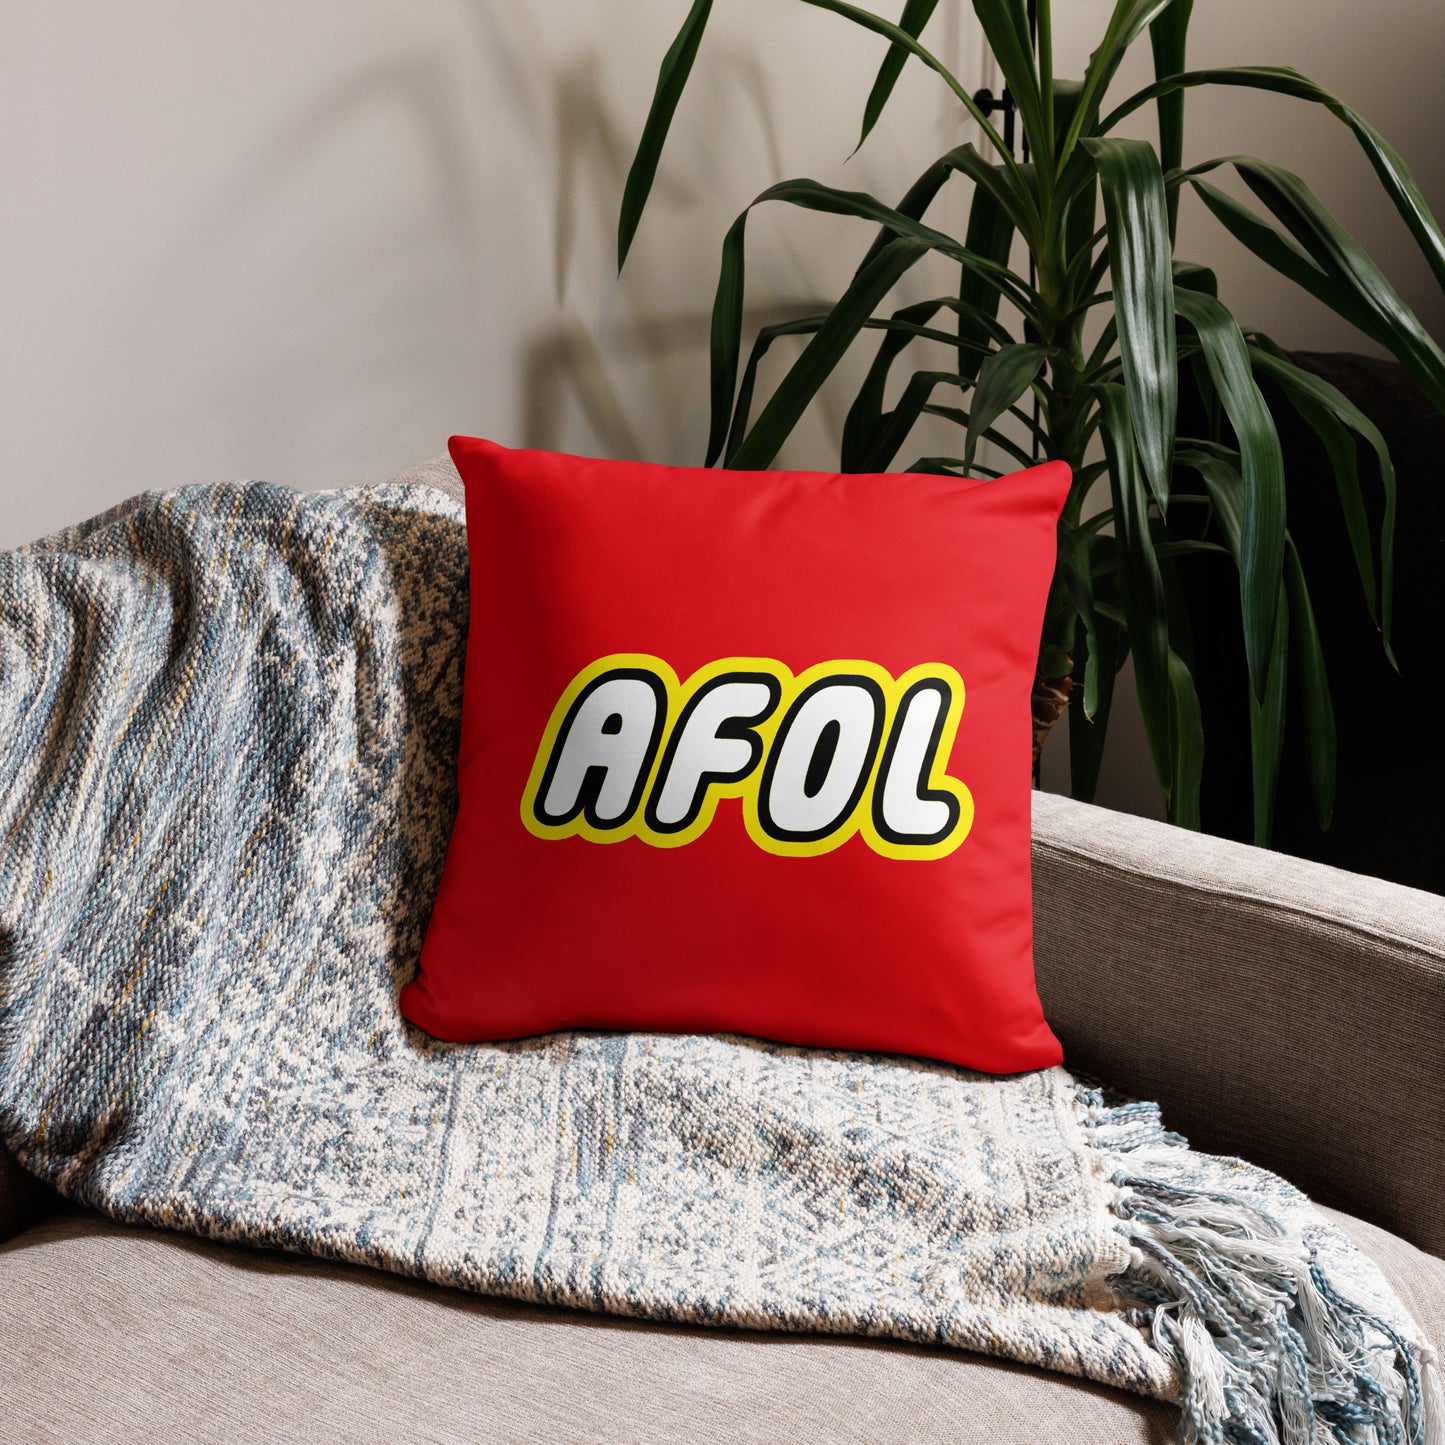 AFOL (Adult Fan of Lego) 18" x 18" Pillow